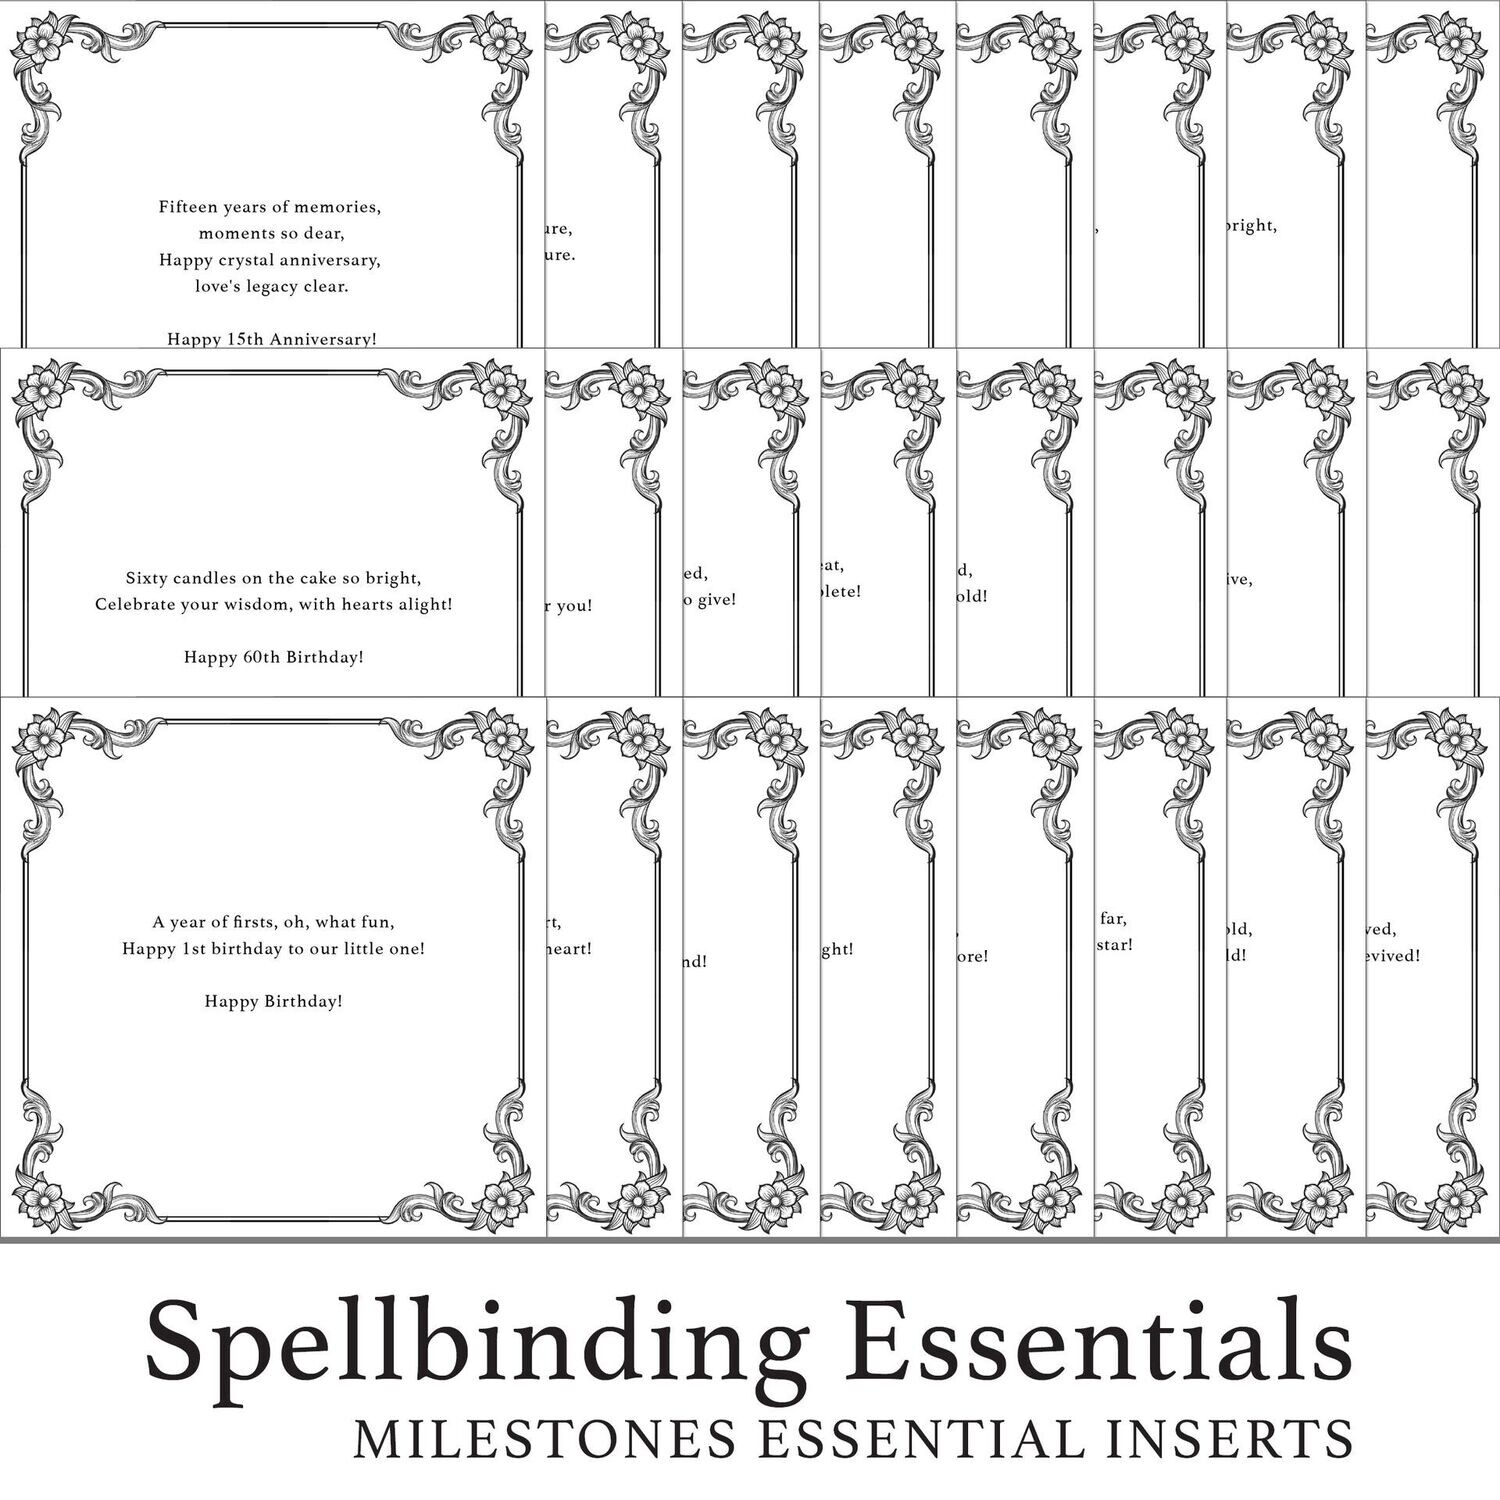 Spellbinding Essentials - 333 Milestones Essential Inserts